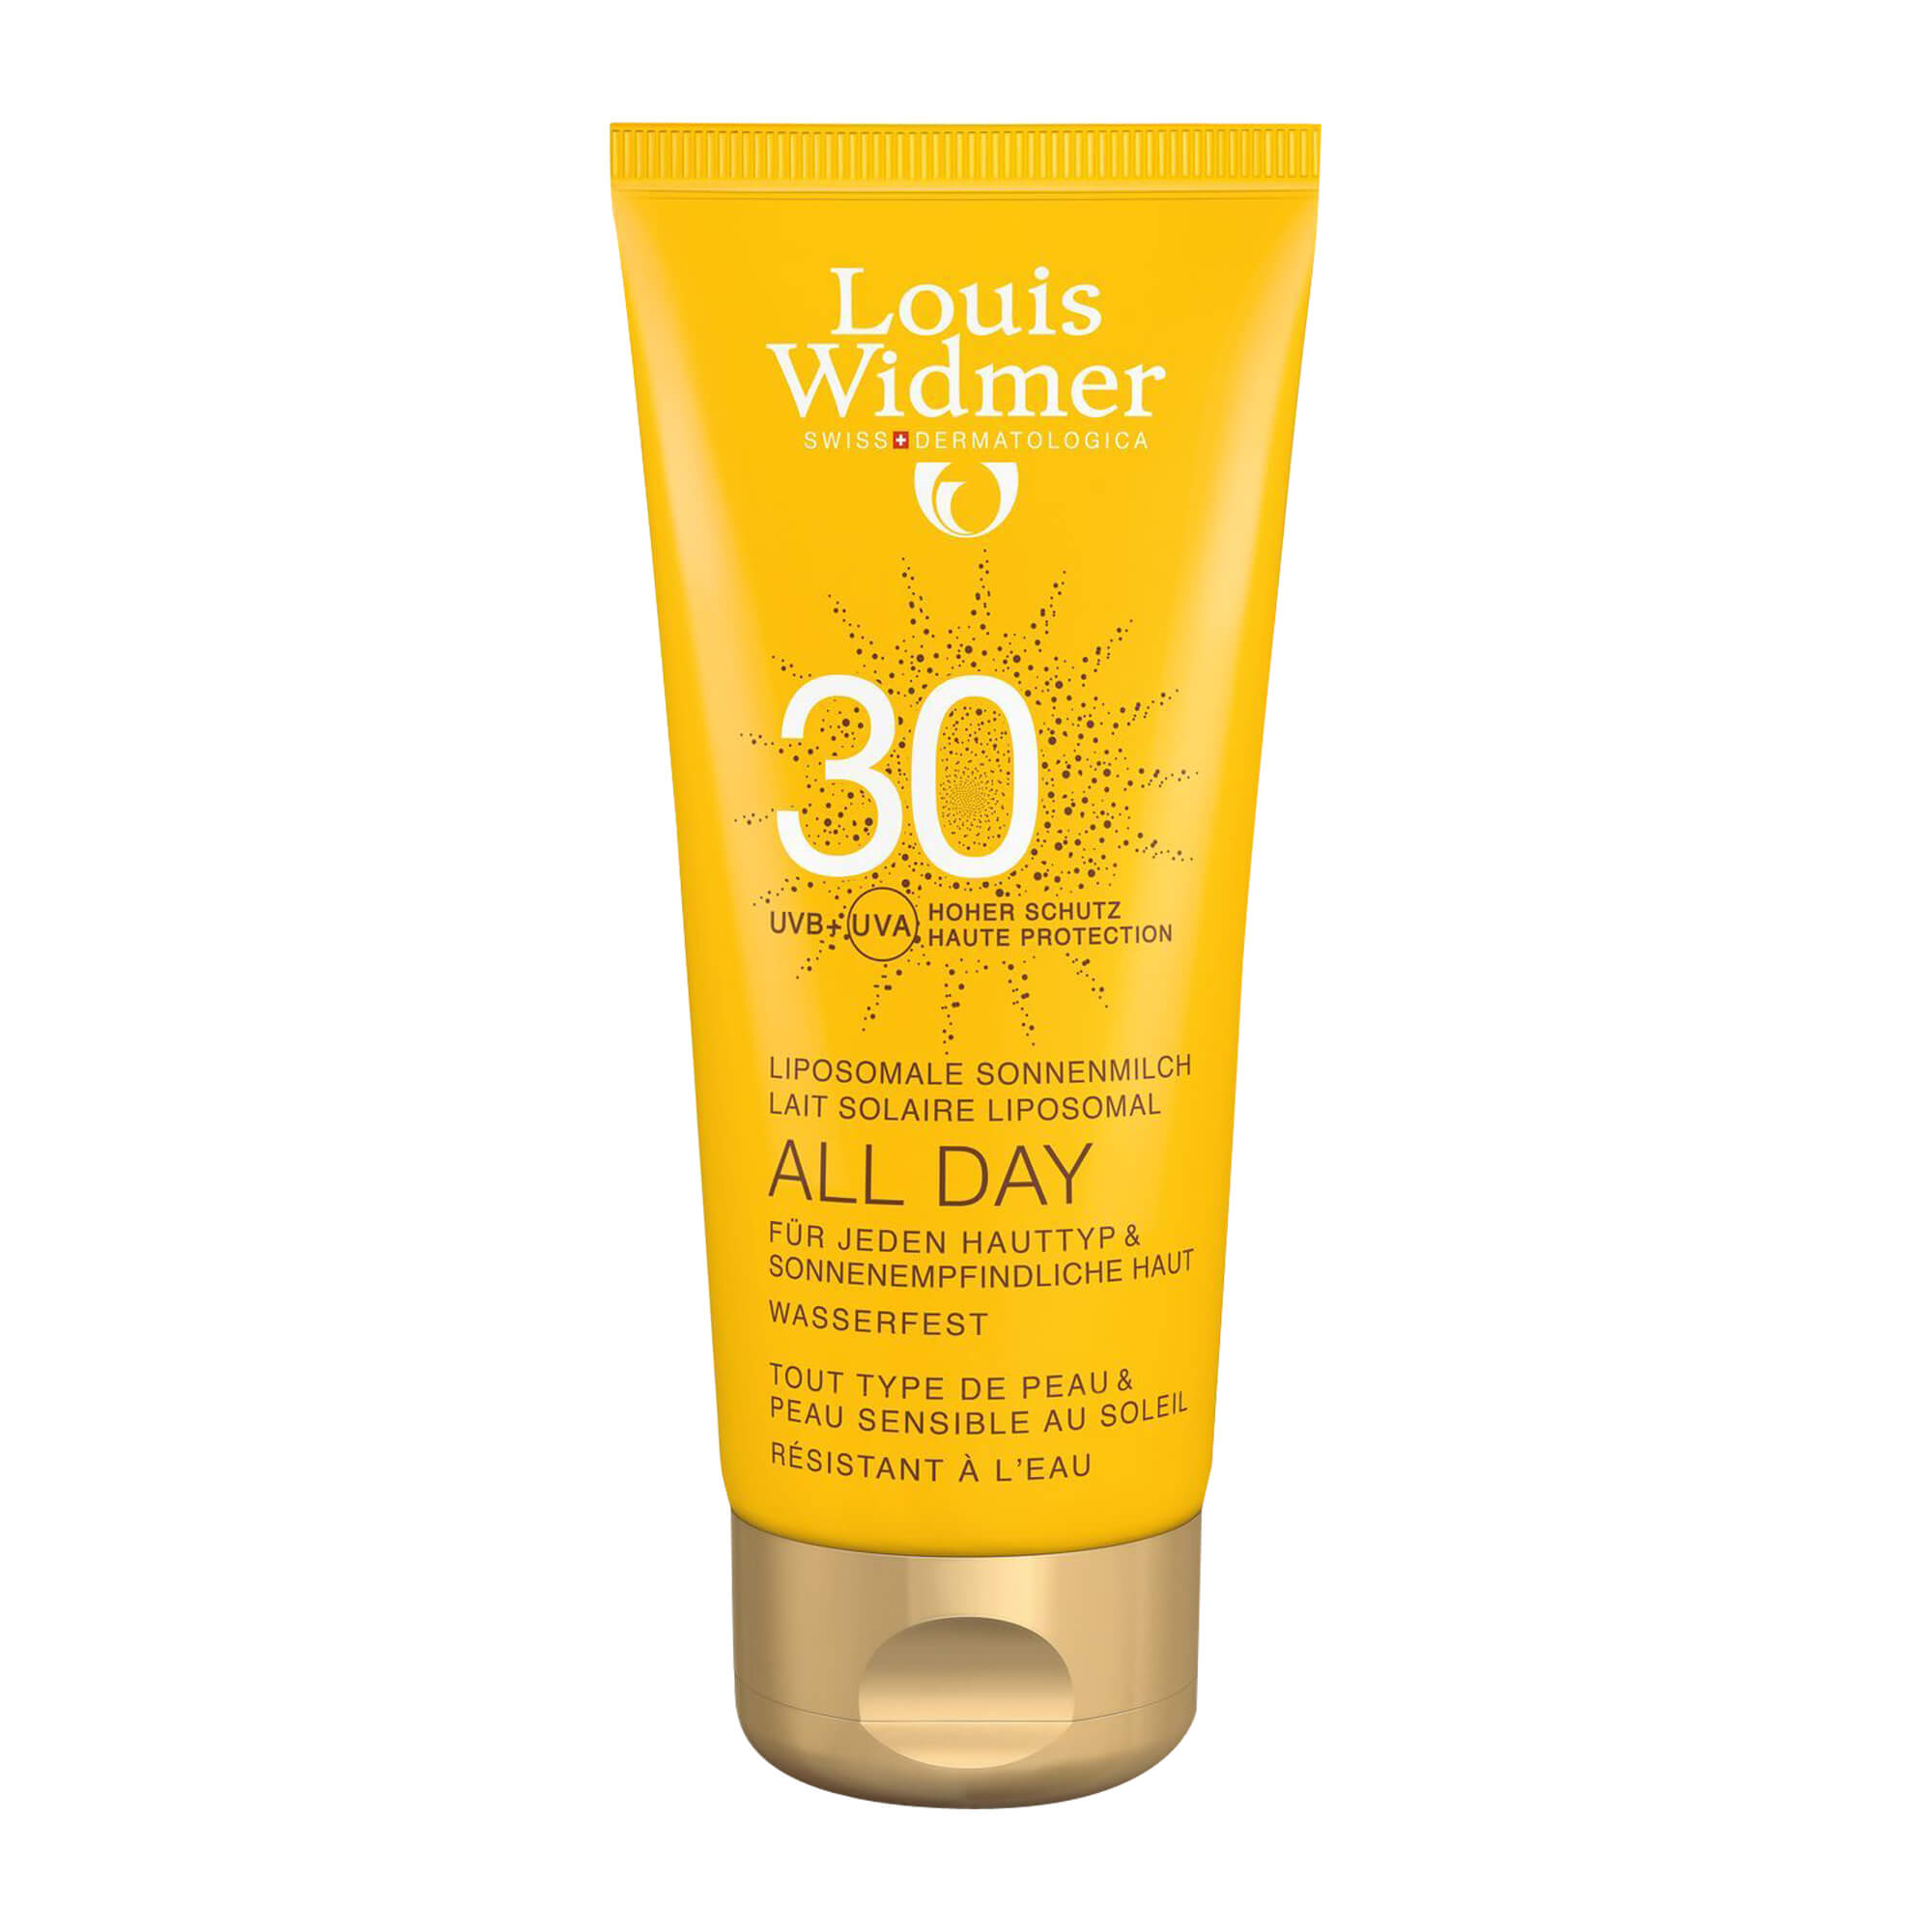 Sonnenmilch mit LSF 30. Für jeden Hauttyp & sonnenempfindliche Haut. Sonnenpflege und -schutz den ganzen Tag. Mit Parfum.